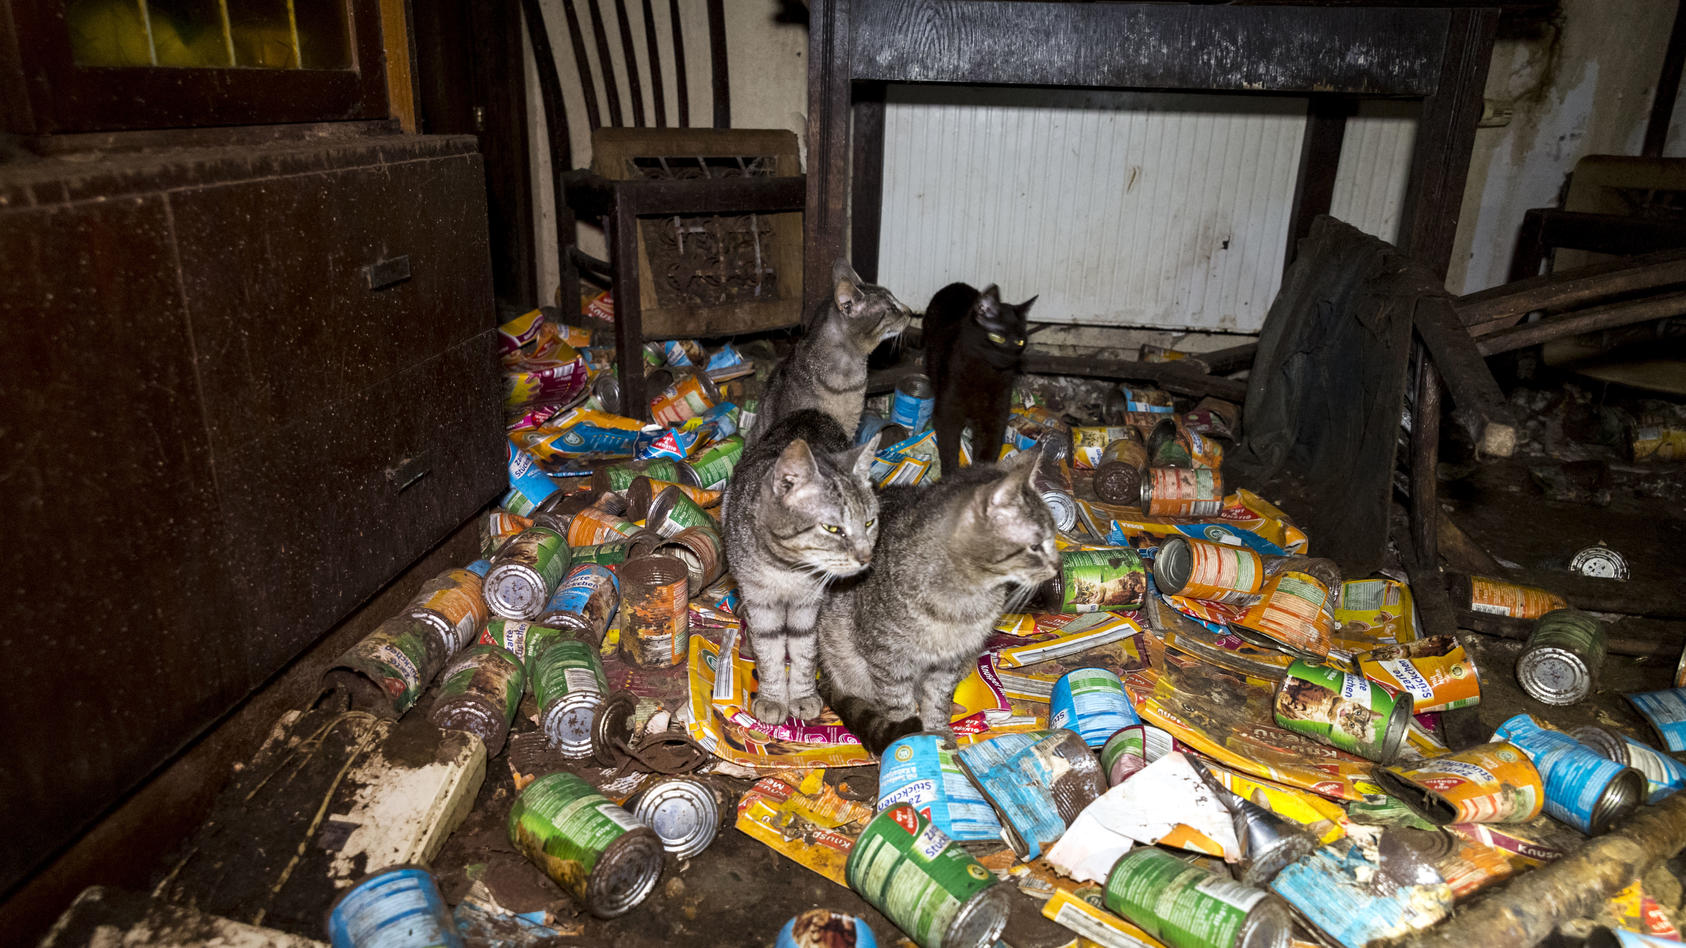 Eine verwahrloste Wohnung mit Katzen, ein klarer Fall von "Animal Hording".